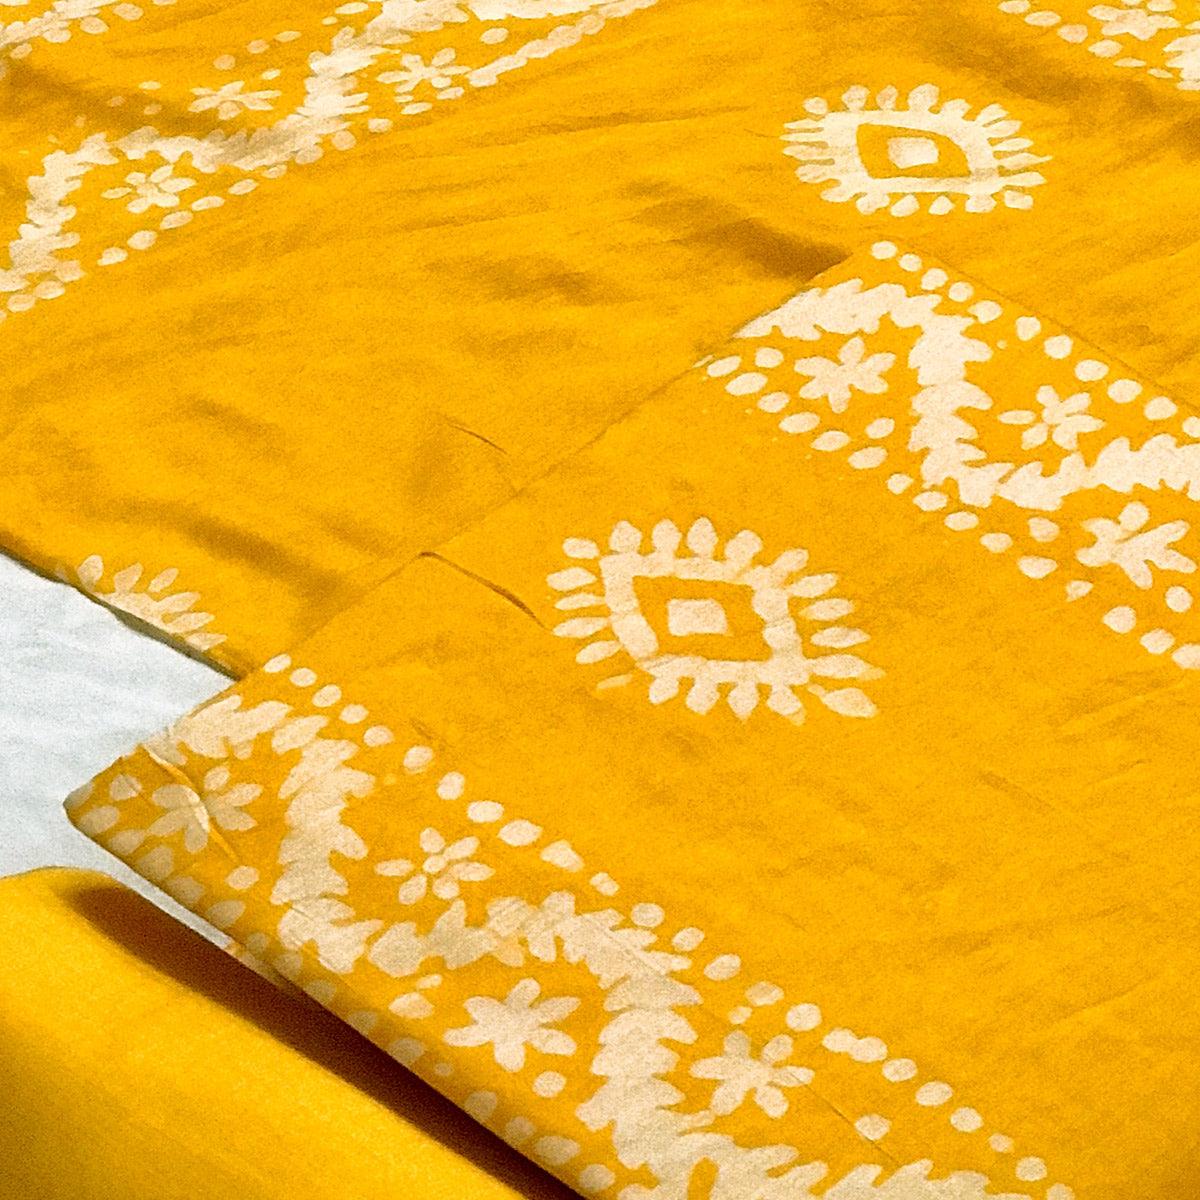 Yellow Batik Printed Chanderi Dress Material - Peachmode